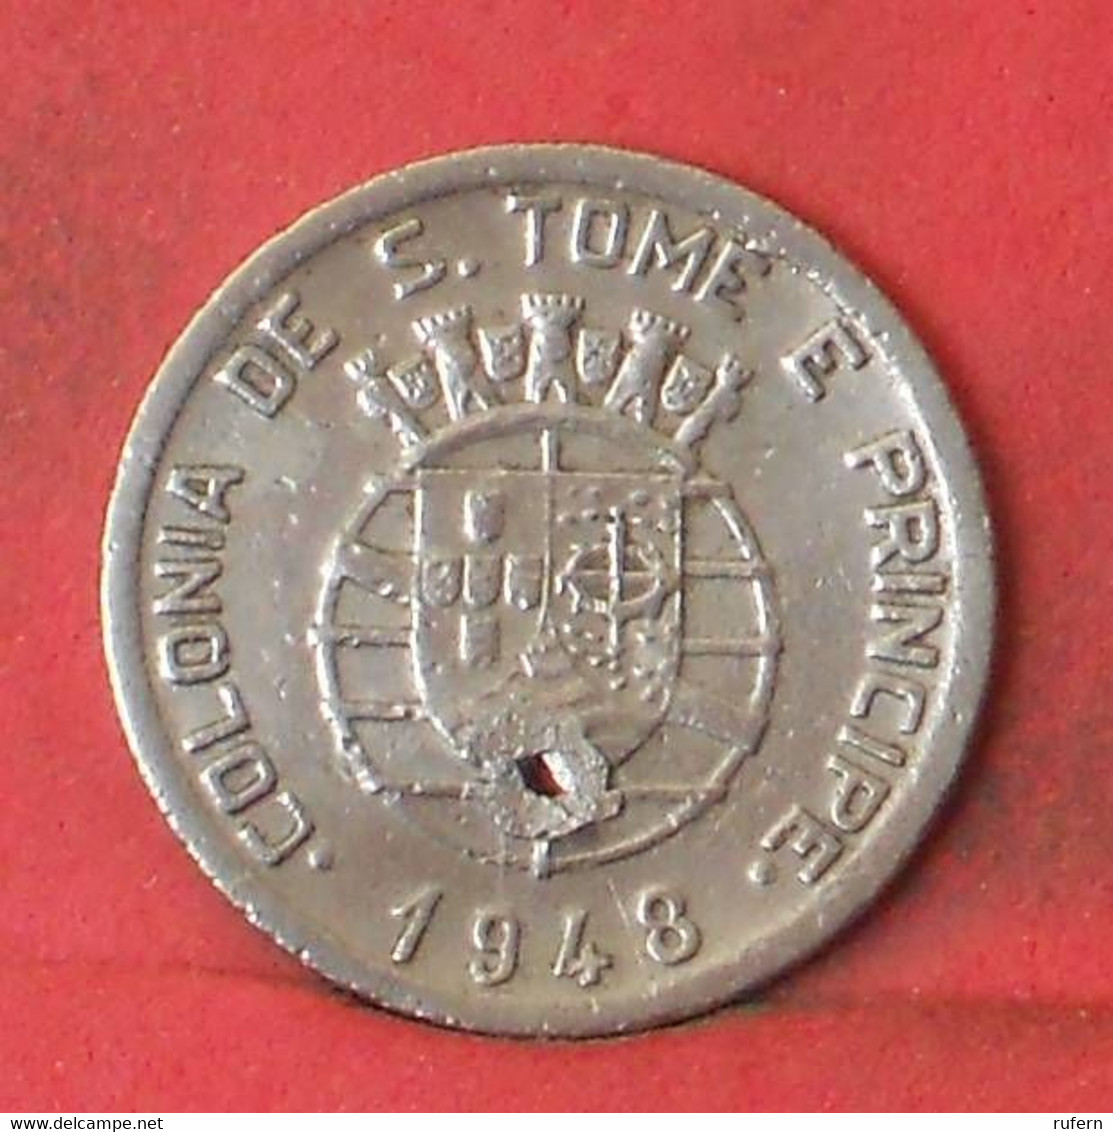 SAINT THOMAS Y PRINCIPE 50 CENTAVOS 1948 -    KM# 8 - (Nº41236) - Sao Tome And Principe